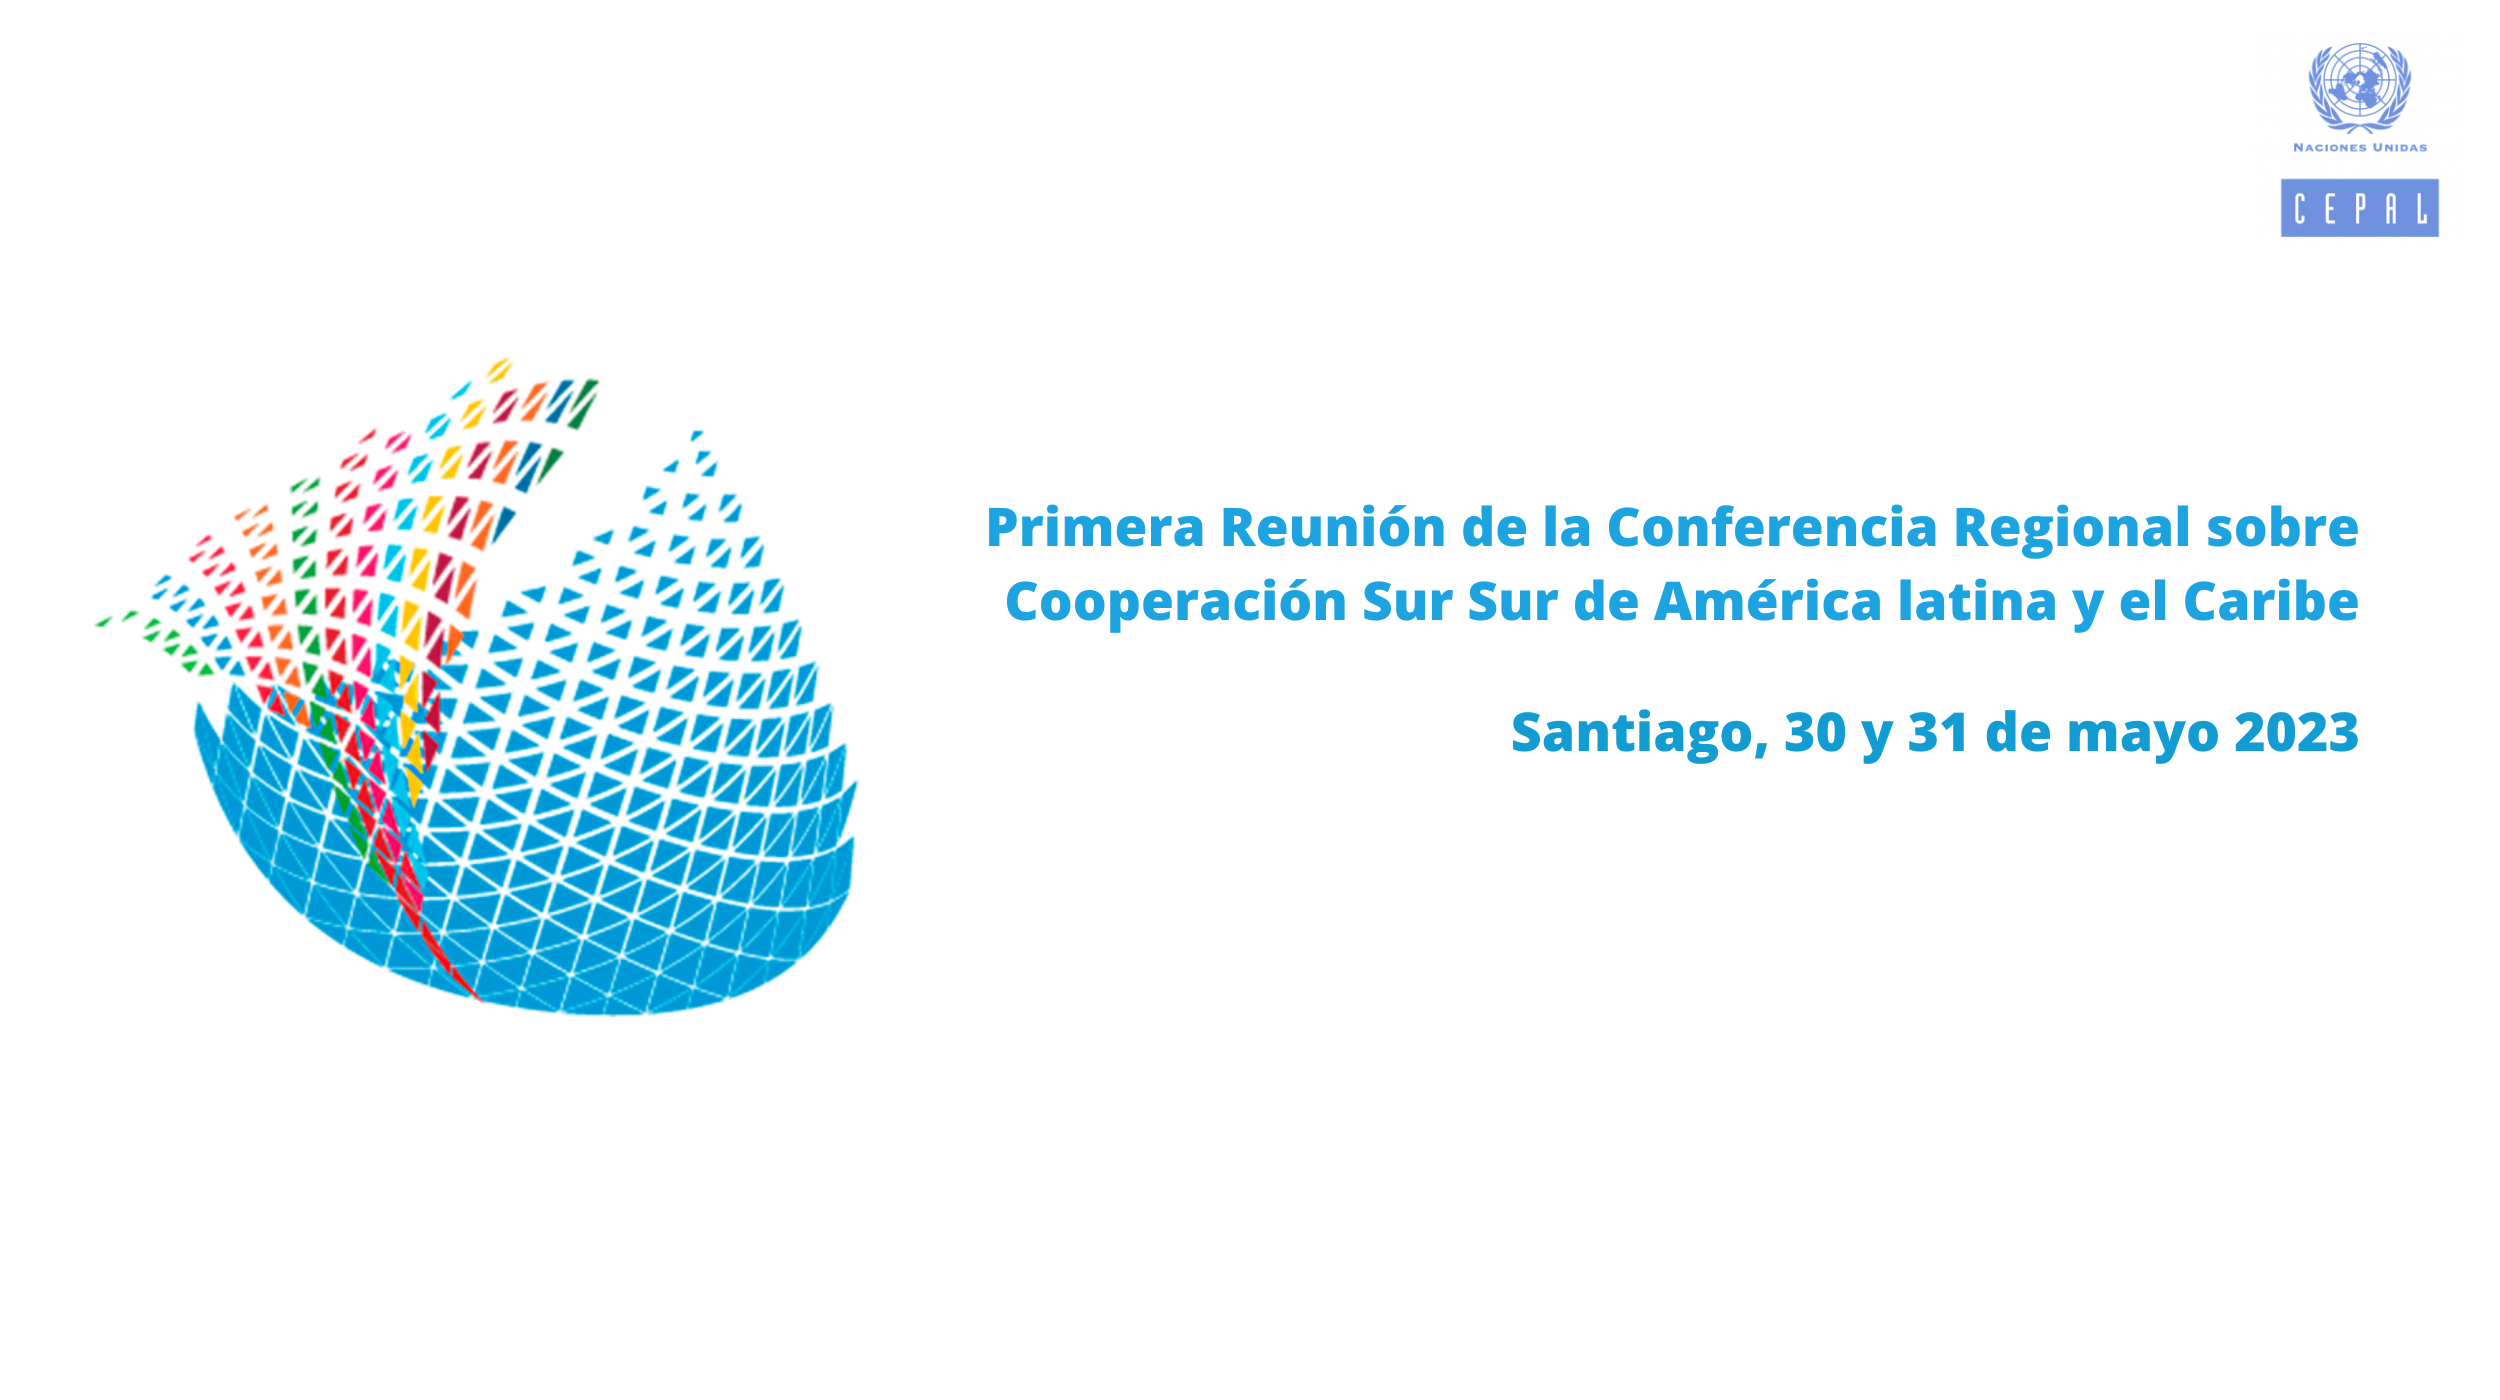 Primera Reunión de la Conferencia Regional sobre Cooperación Sur Sur de América latina y el Caribe (1).png